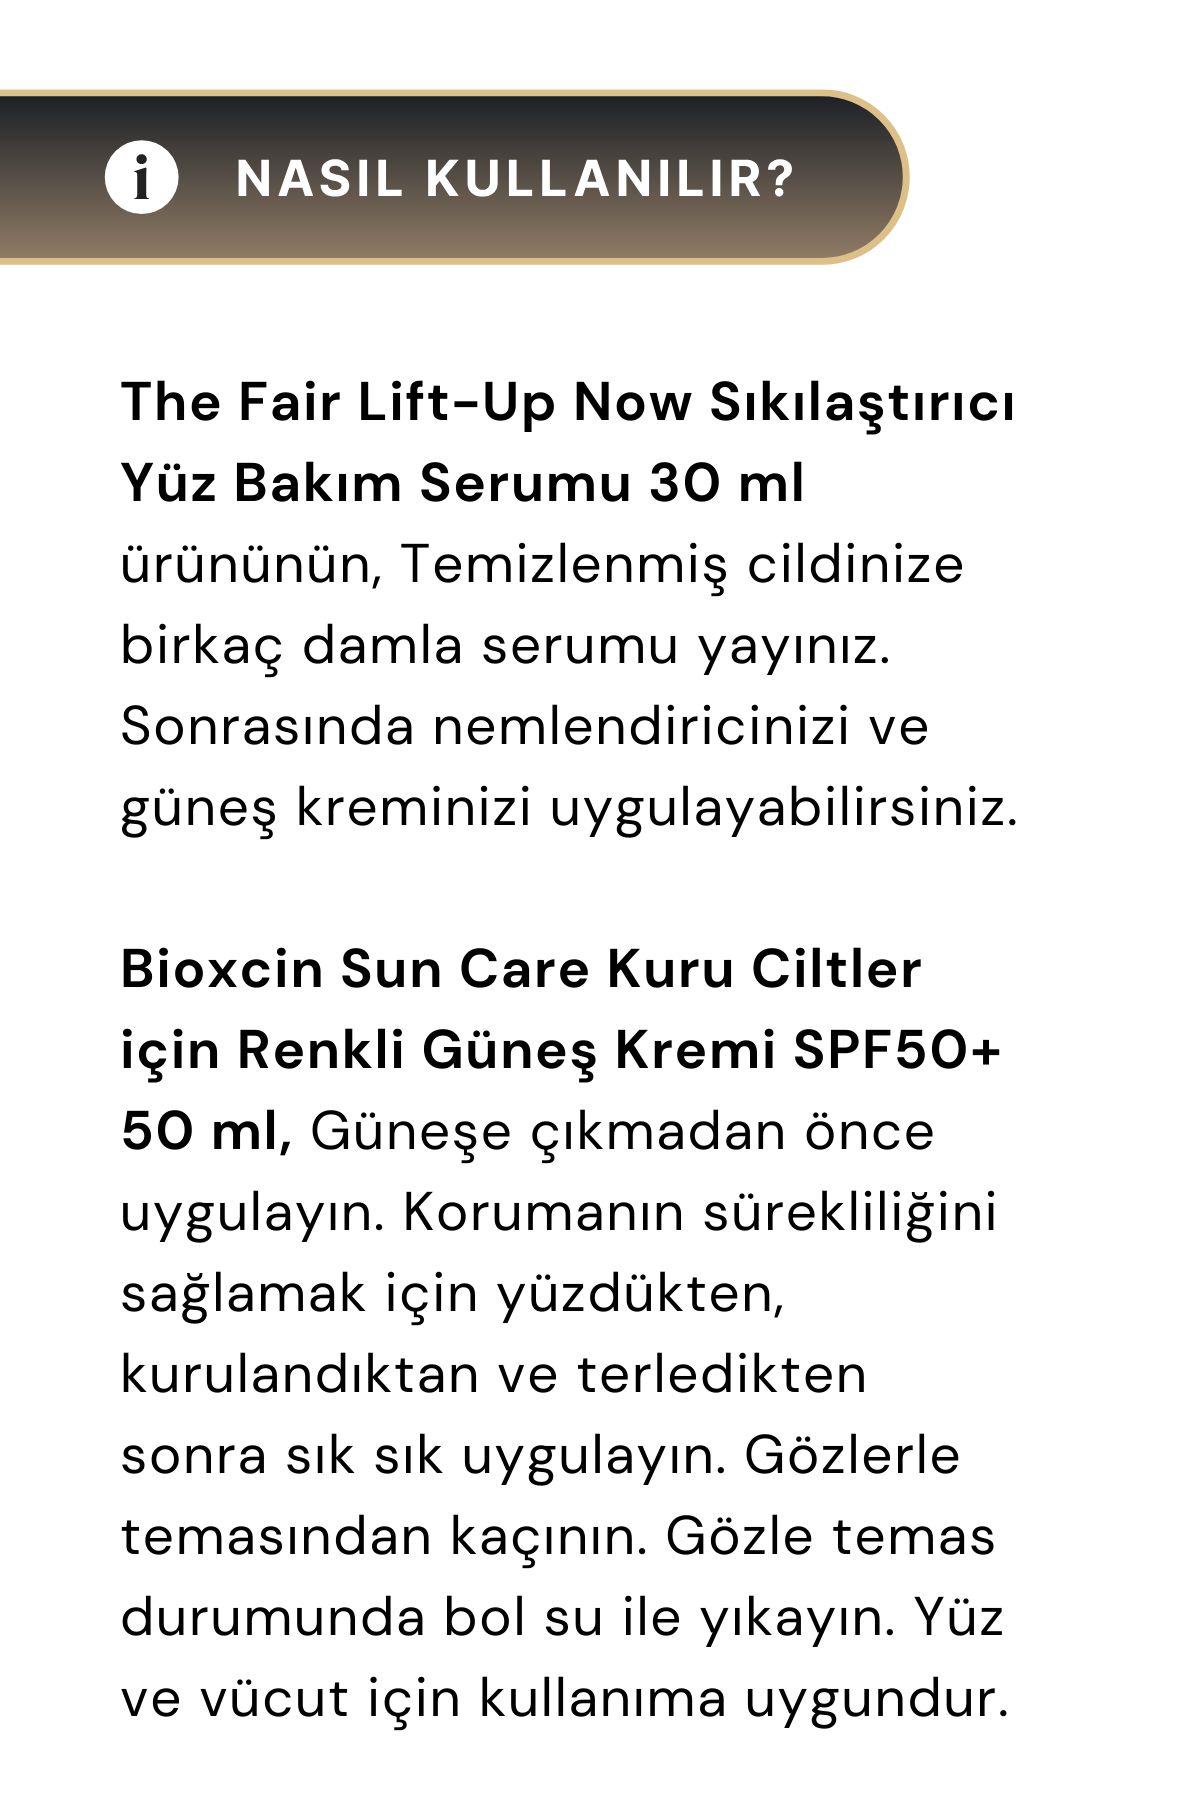 Bioxcin Sun Care Kuru Ciltler için Renkli Güneş Kremi SPF50+ 50 ml & The Fair Lift-Up Now Yüz Bakım Serumu 30 ml